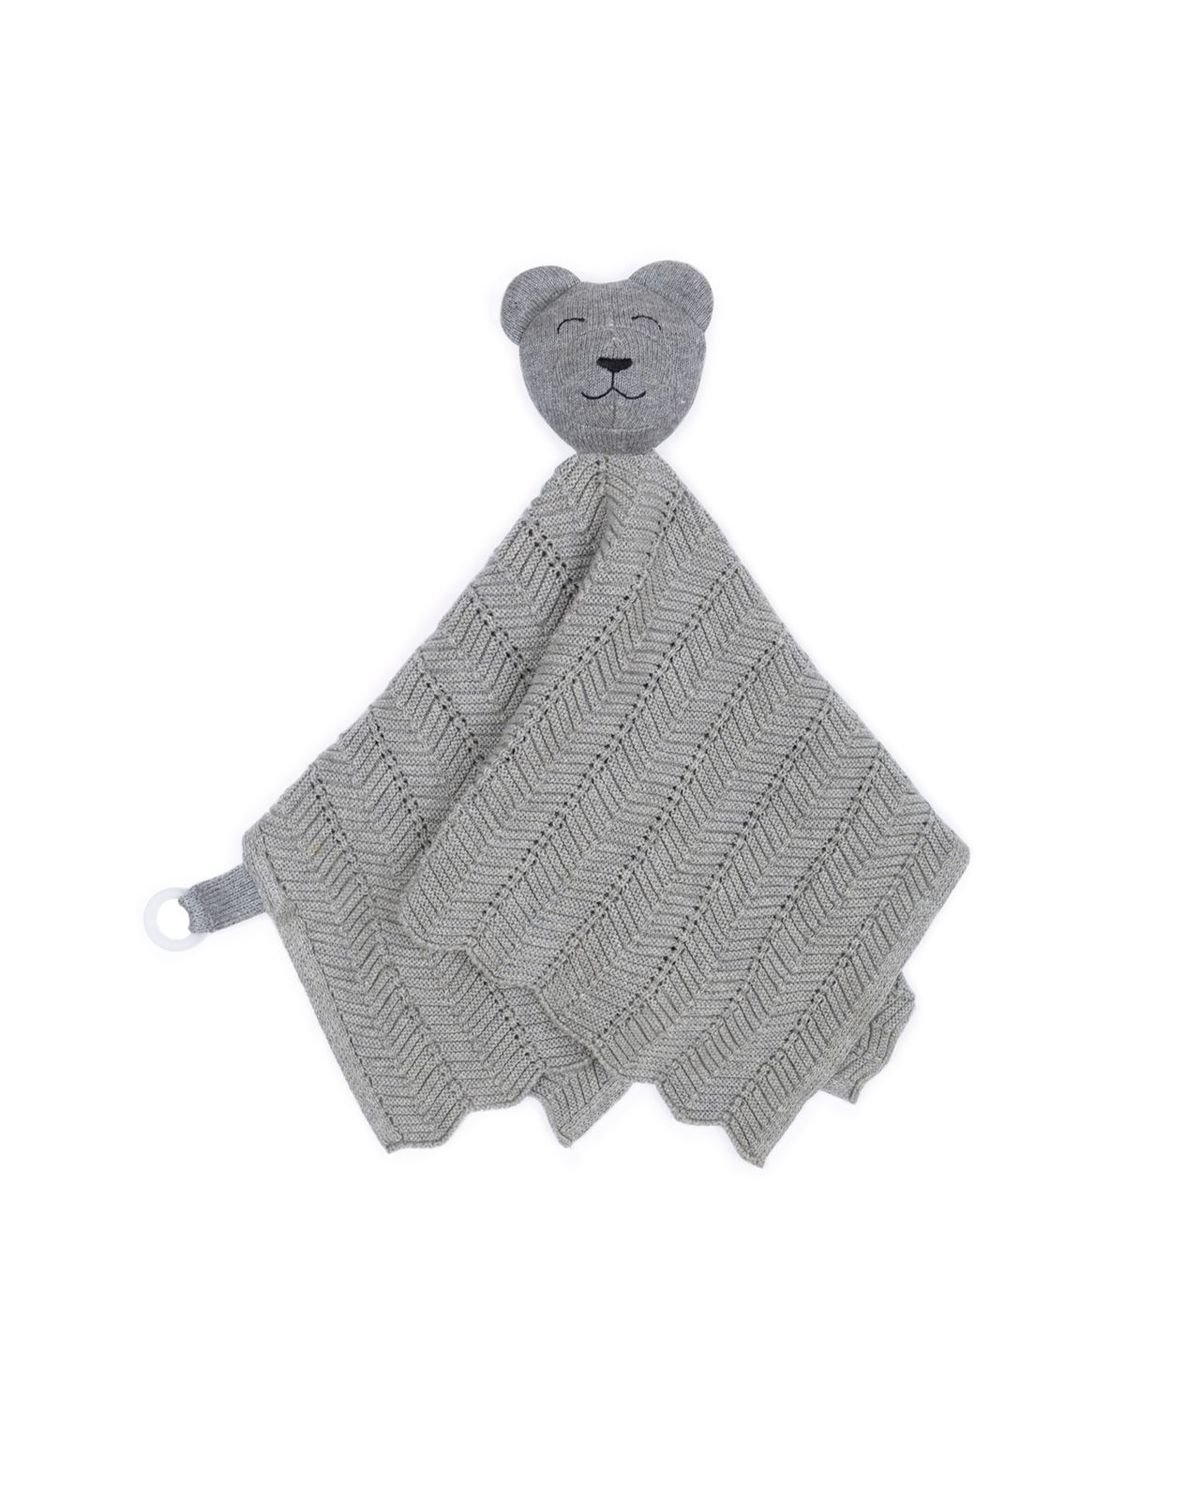 Smallstuff Fishbone Cuddle Cloth Grey Teddy  - Onlineshop Coolshop